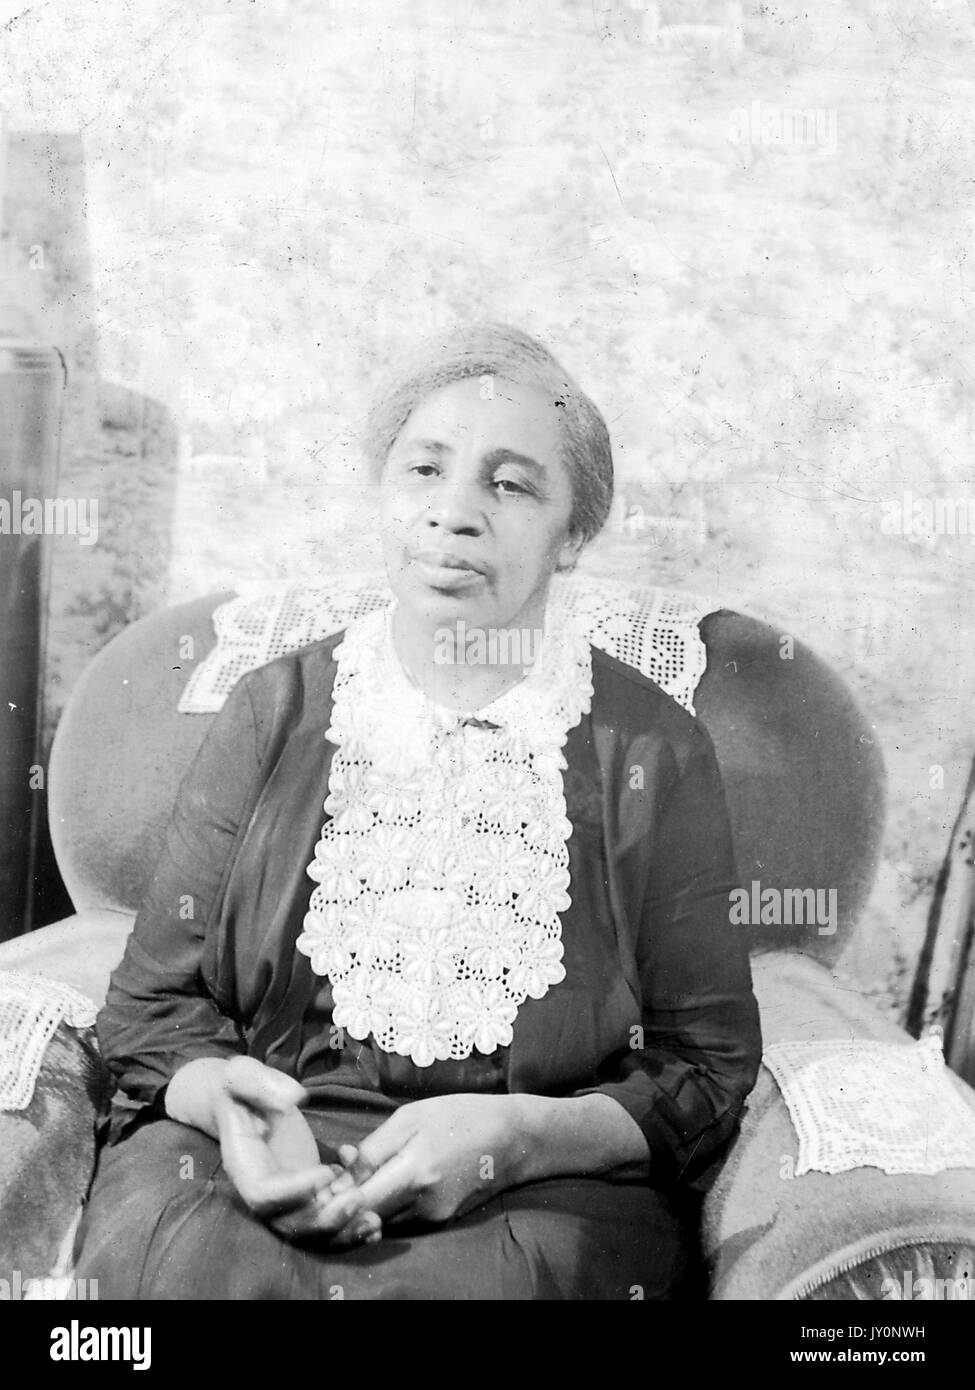 Halbkörperportrait einer afroamerikanischen Frau, die auf einem Armstuhl sitzt, die Hände auf dem Schoß trägt, ein dunkles Kleid trägt, vor einer Kulisse, mit einem ernsten Gesichtsausdruck, 1920. Stockfoto